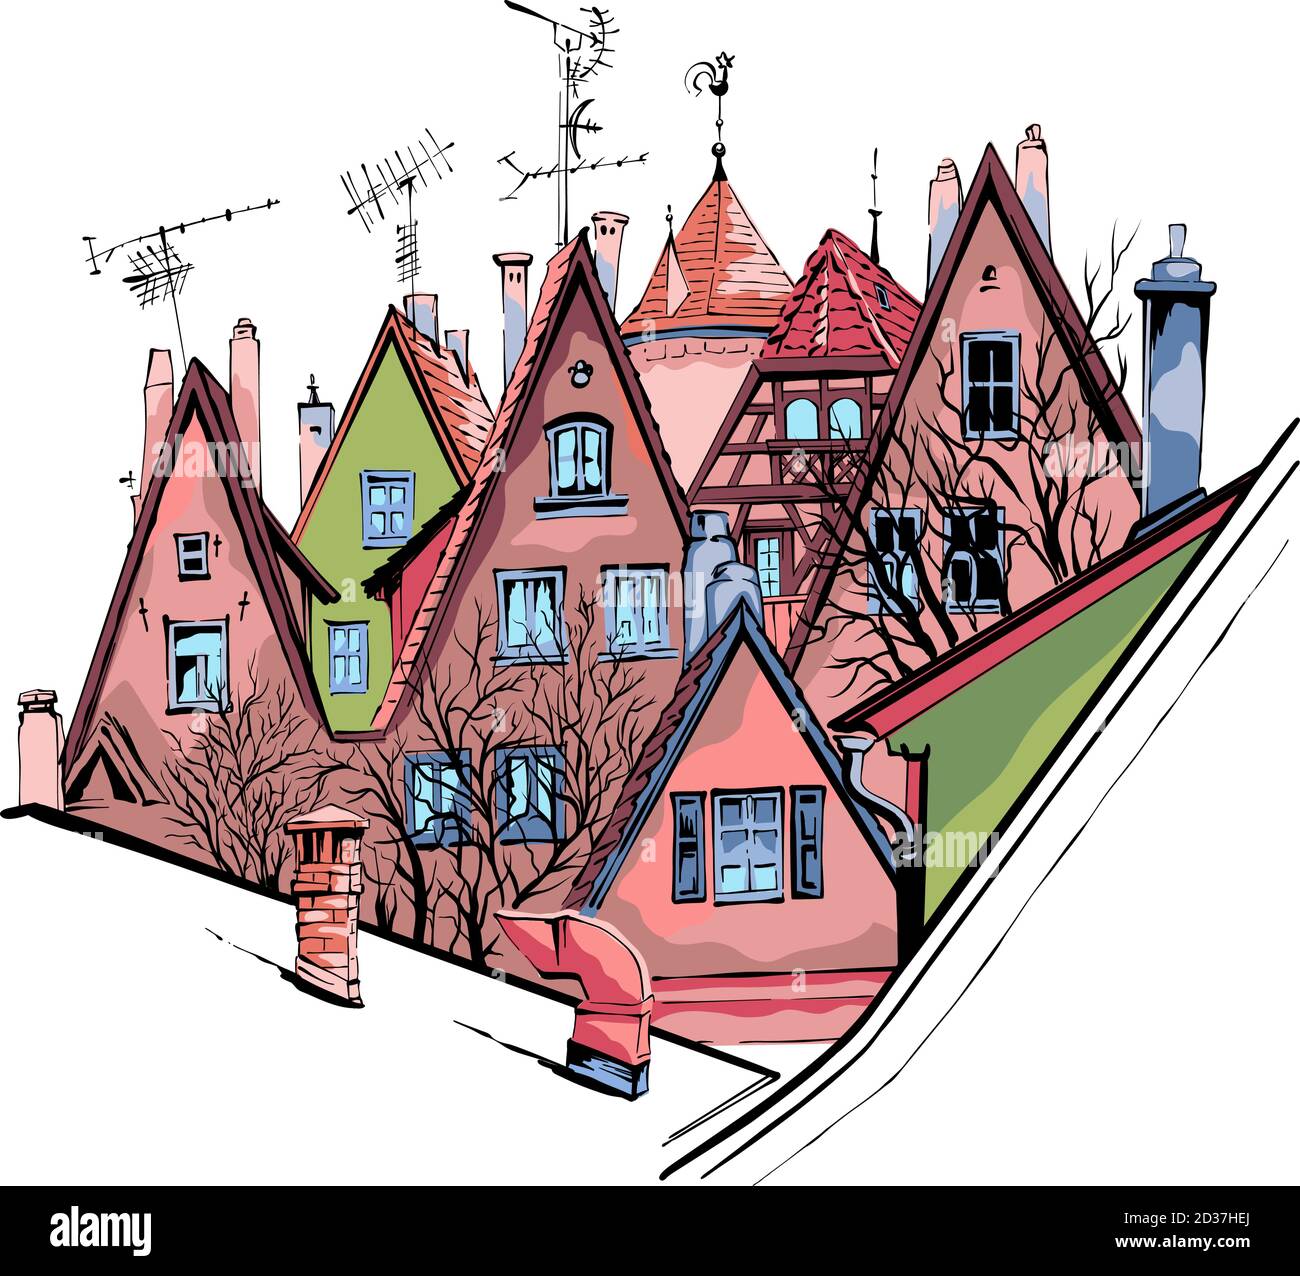 Vektor-Farbskizze von malerischen Fassaden und Dächern der mittelalterlichen Altstadt, Rothenburg ob der Tauber, Bayern, Deutschland Stock Vektor